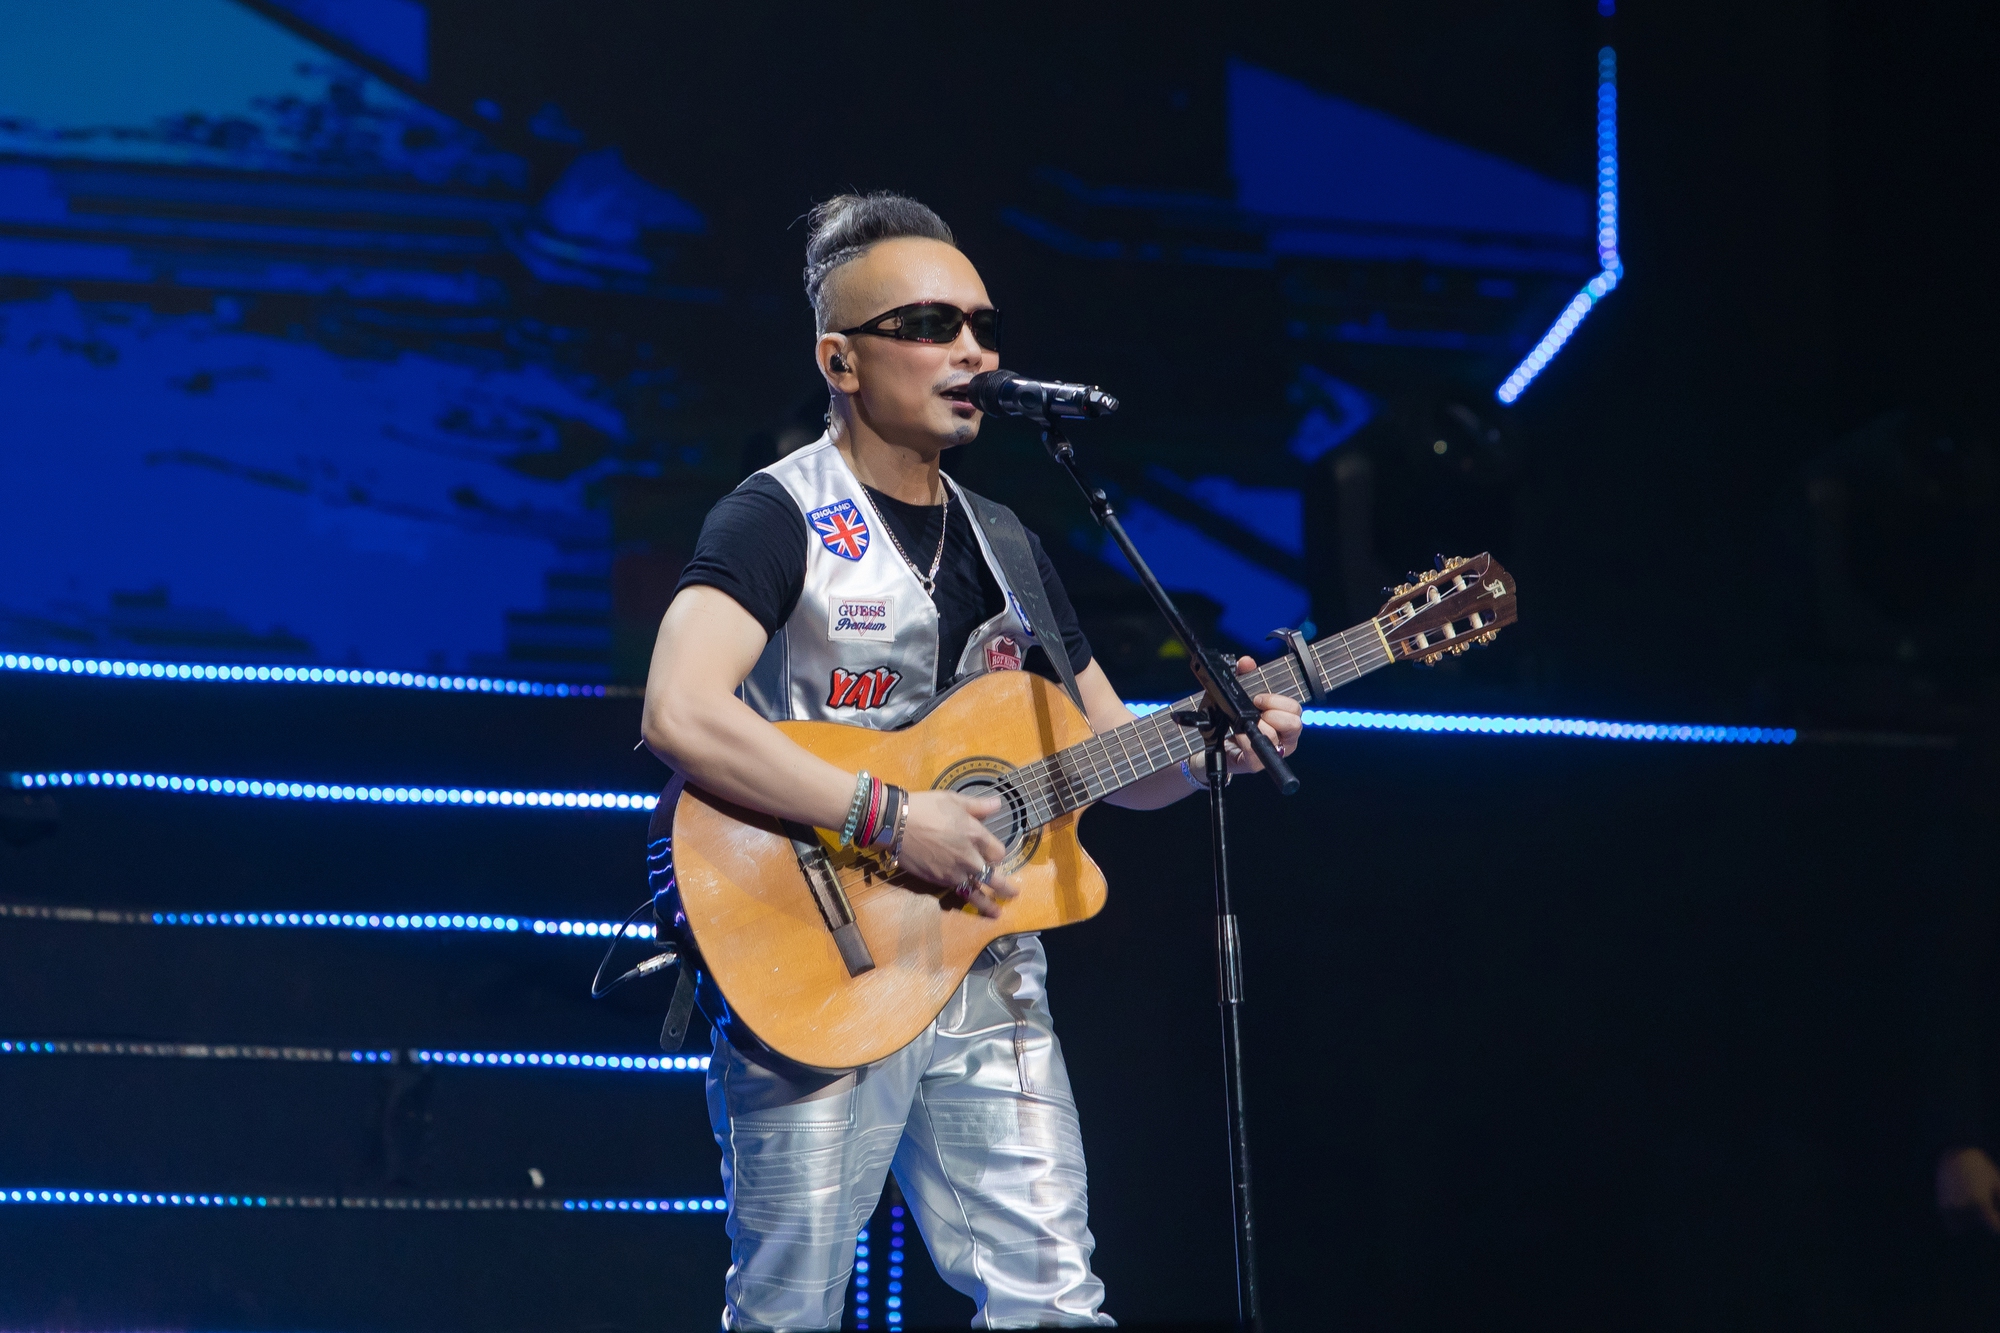 Jimmii Nguyễn 30 năm ca hát với Triệu lời tri ân - Ảnh 2.